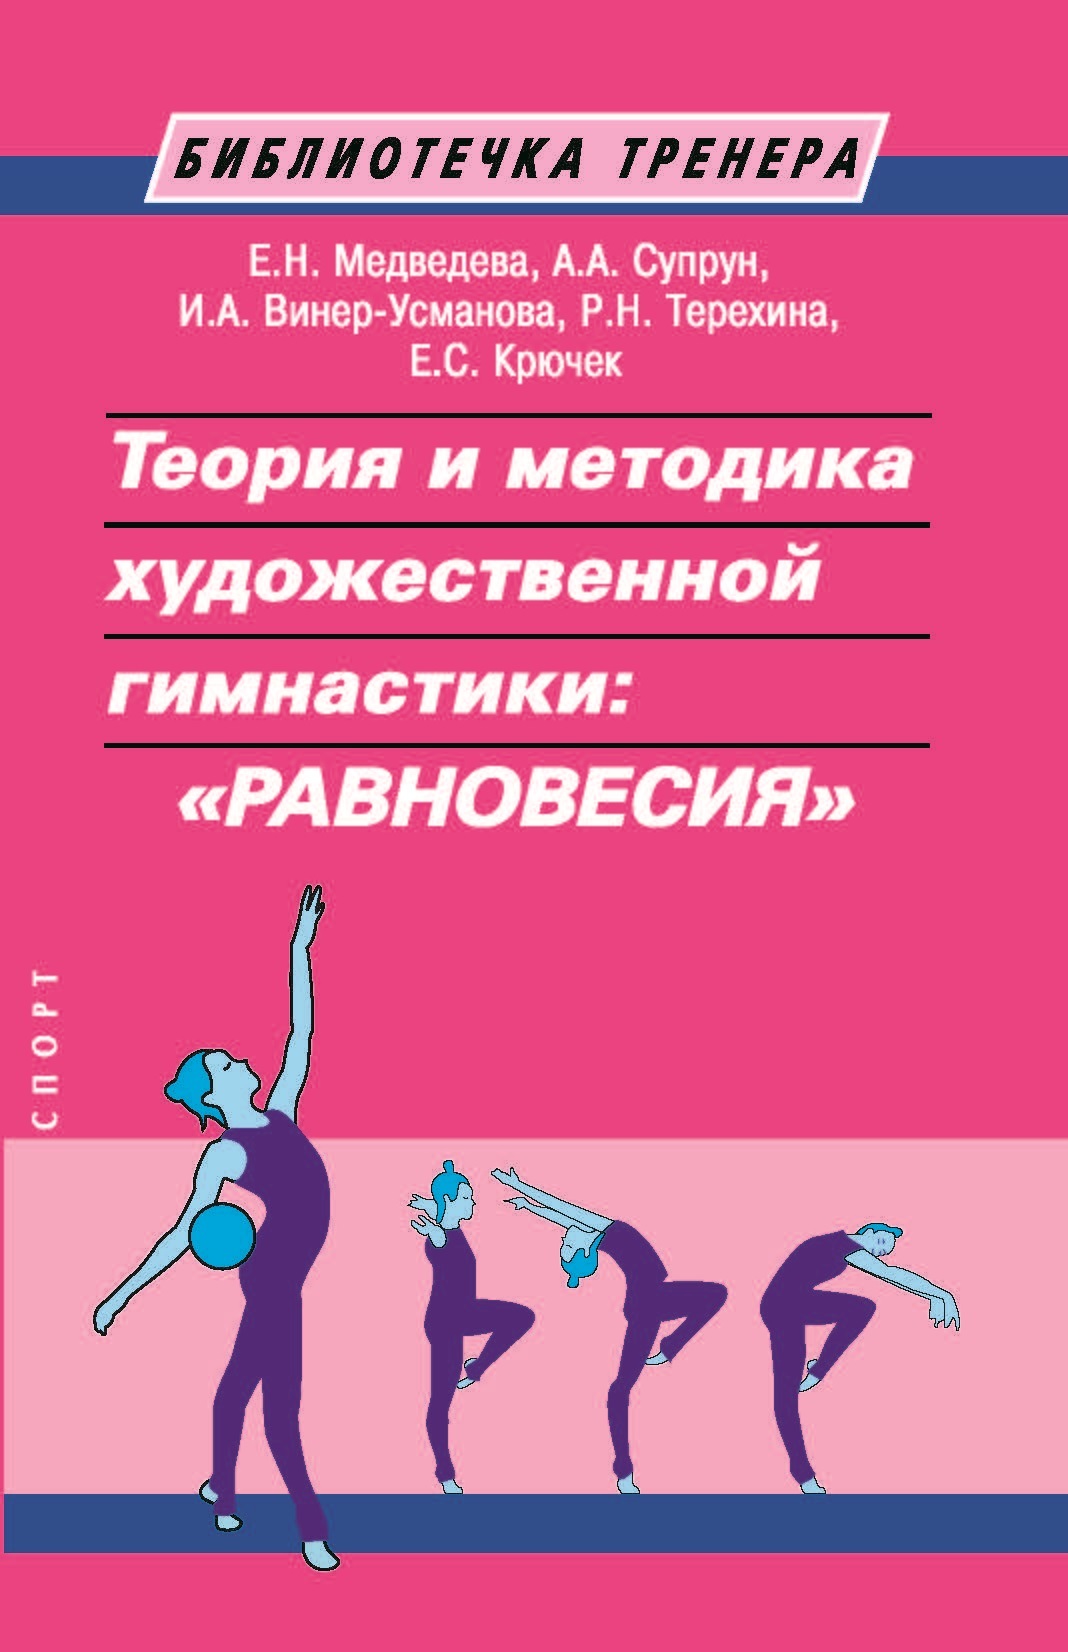 фото Книга теория и методика художественной гимнастики равновесия издательство "спорт"